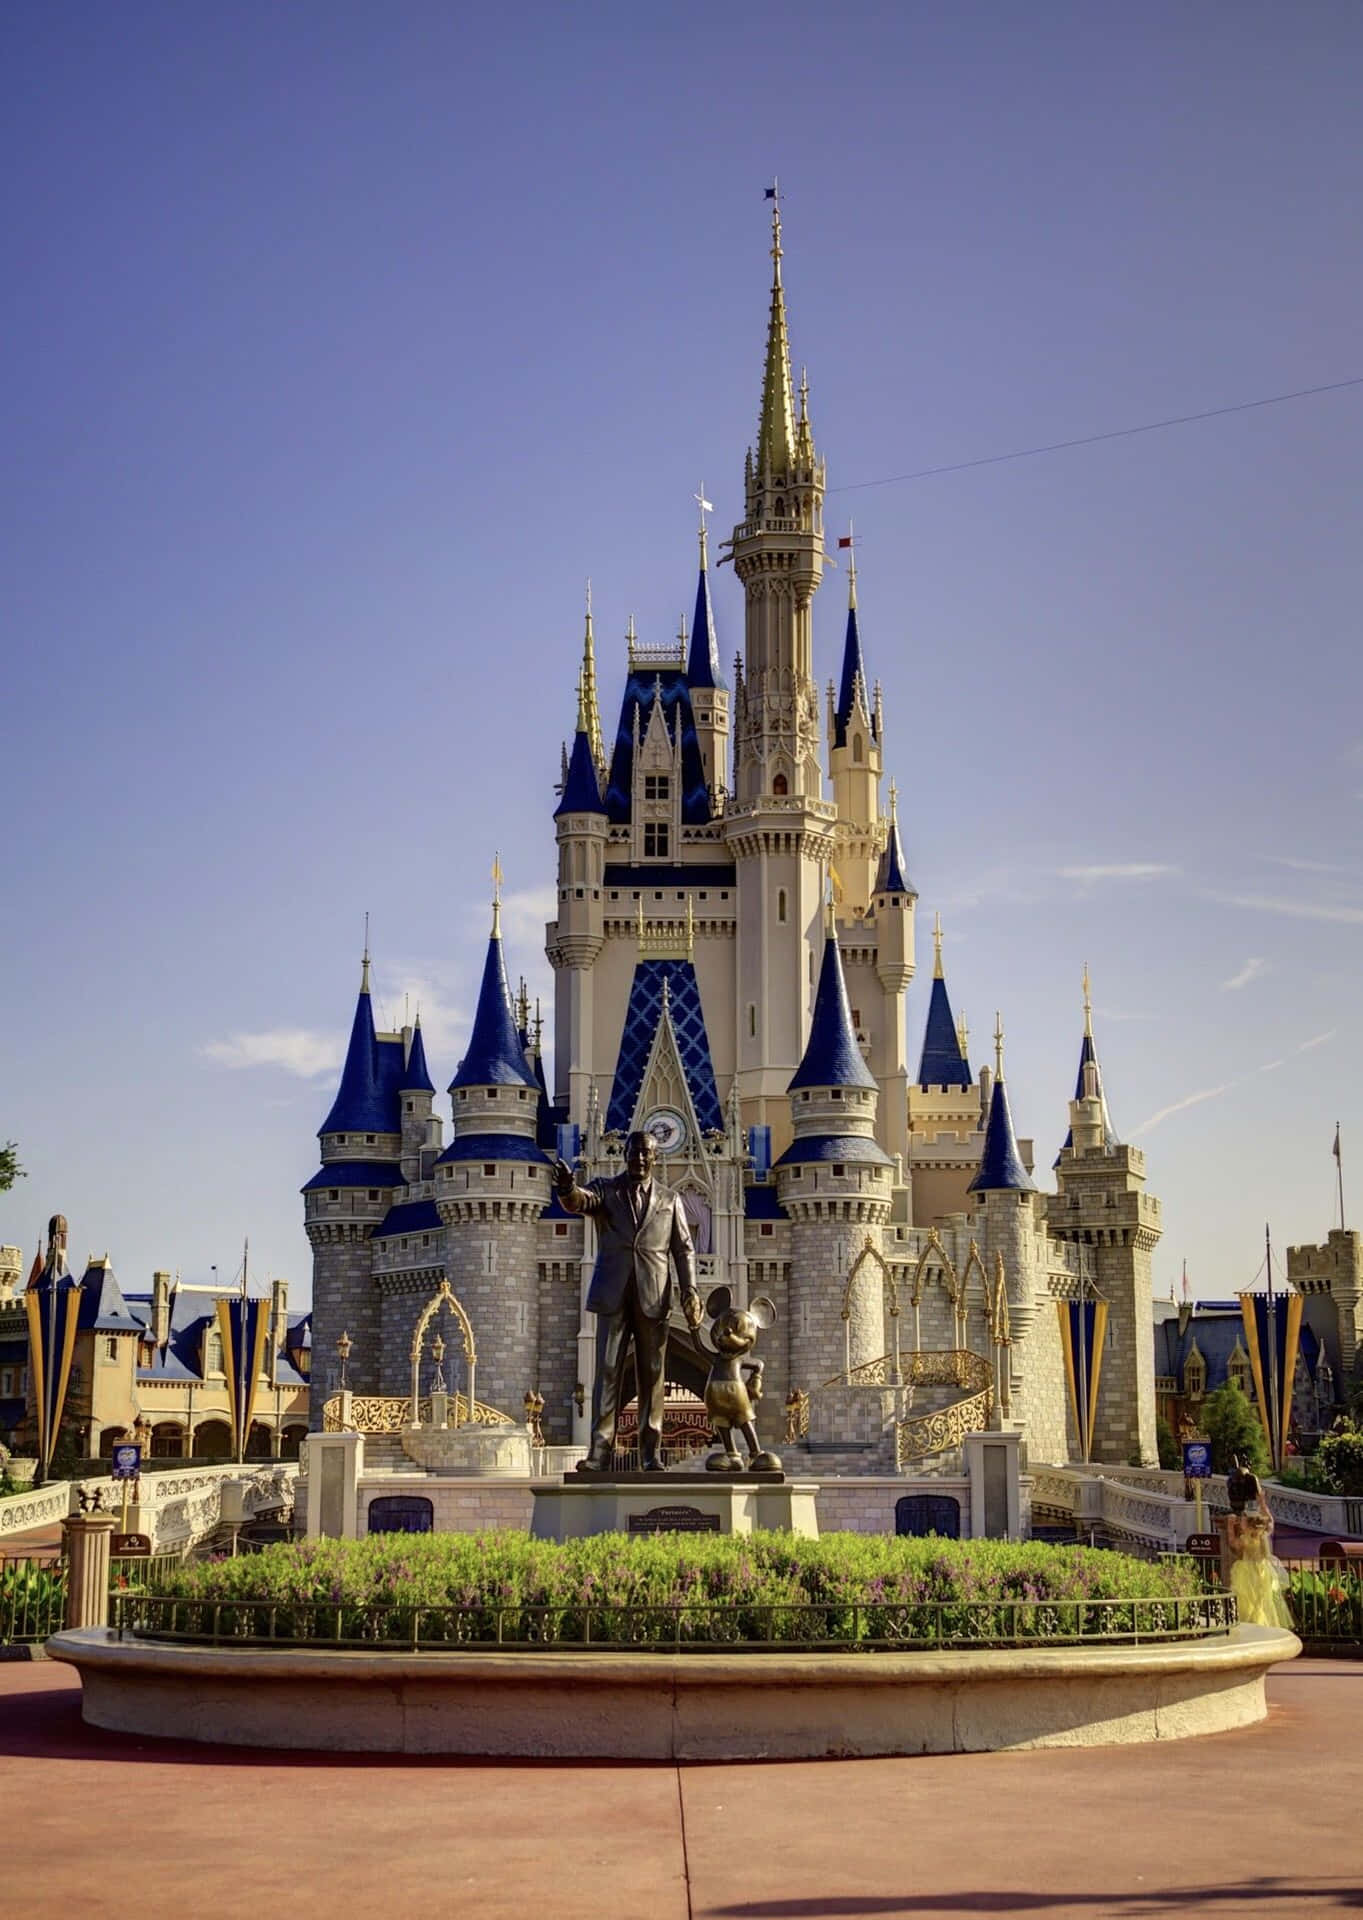 Tag din Disney World-ferie til nye højder med en Iphone-baggrund. Wallpaper